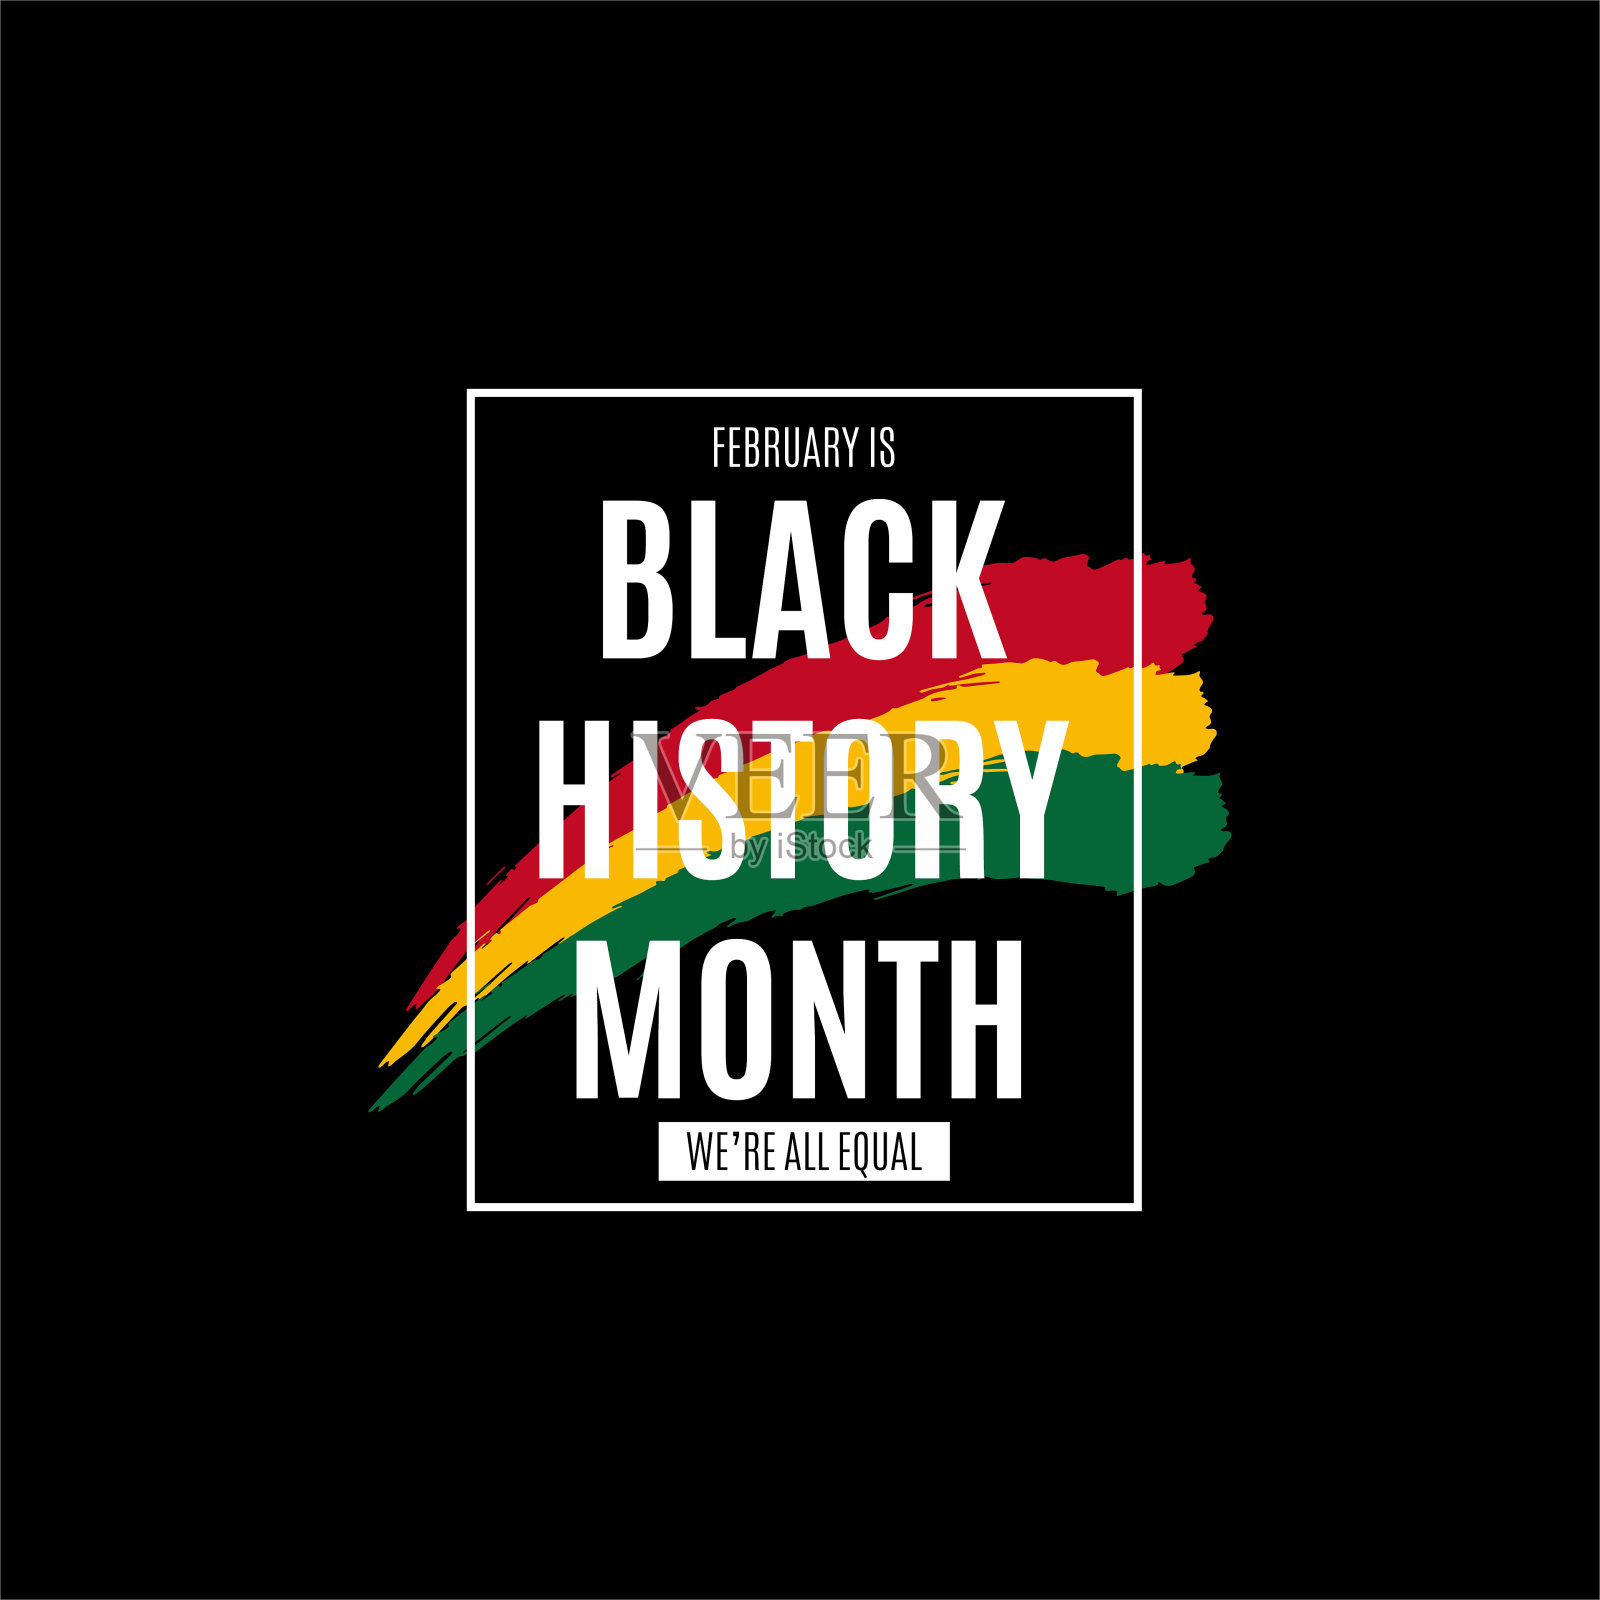 黑人历史月。非洲裔美国人的历史旗帜。美国和加拿大在2月庆祝，英国在10月庆祝。海报、标语牌、卡片、横幅概念设计。矢量图插画图片素材